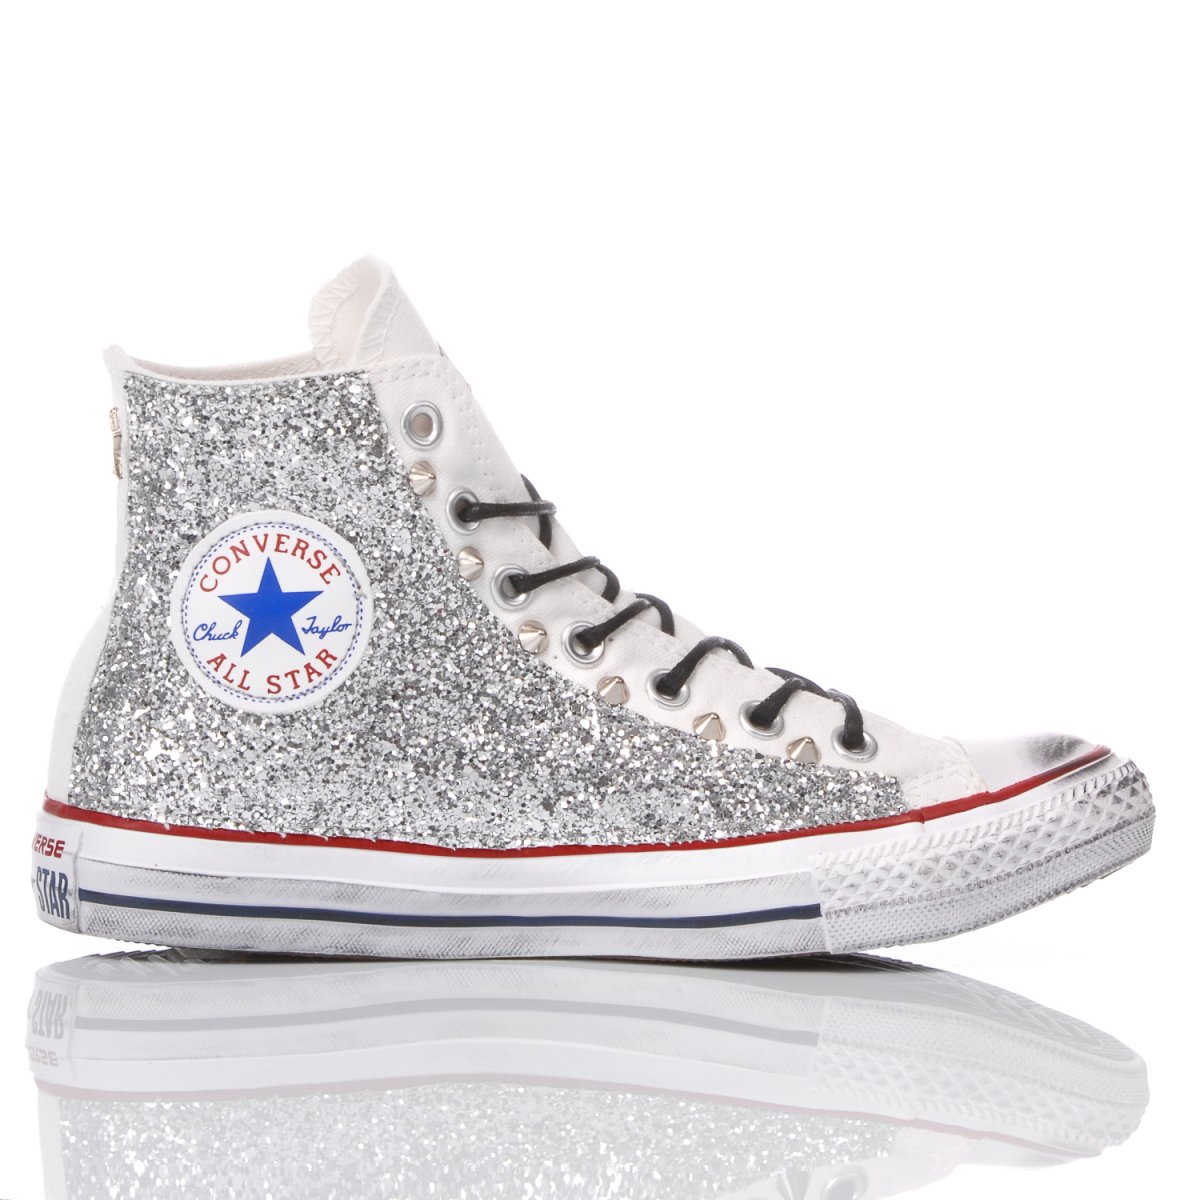 glitter silver converse